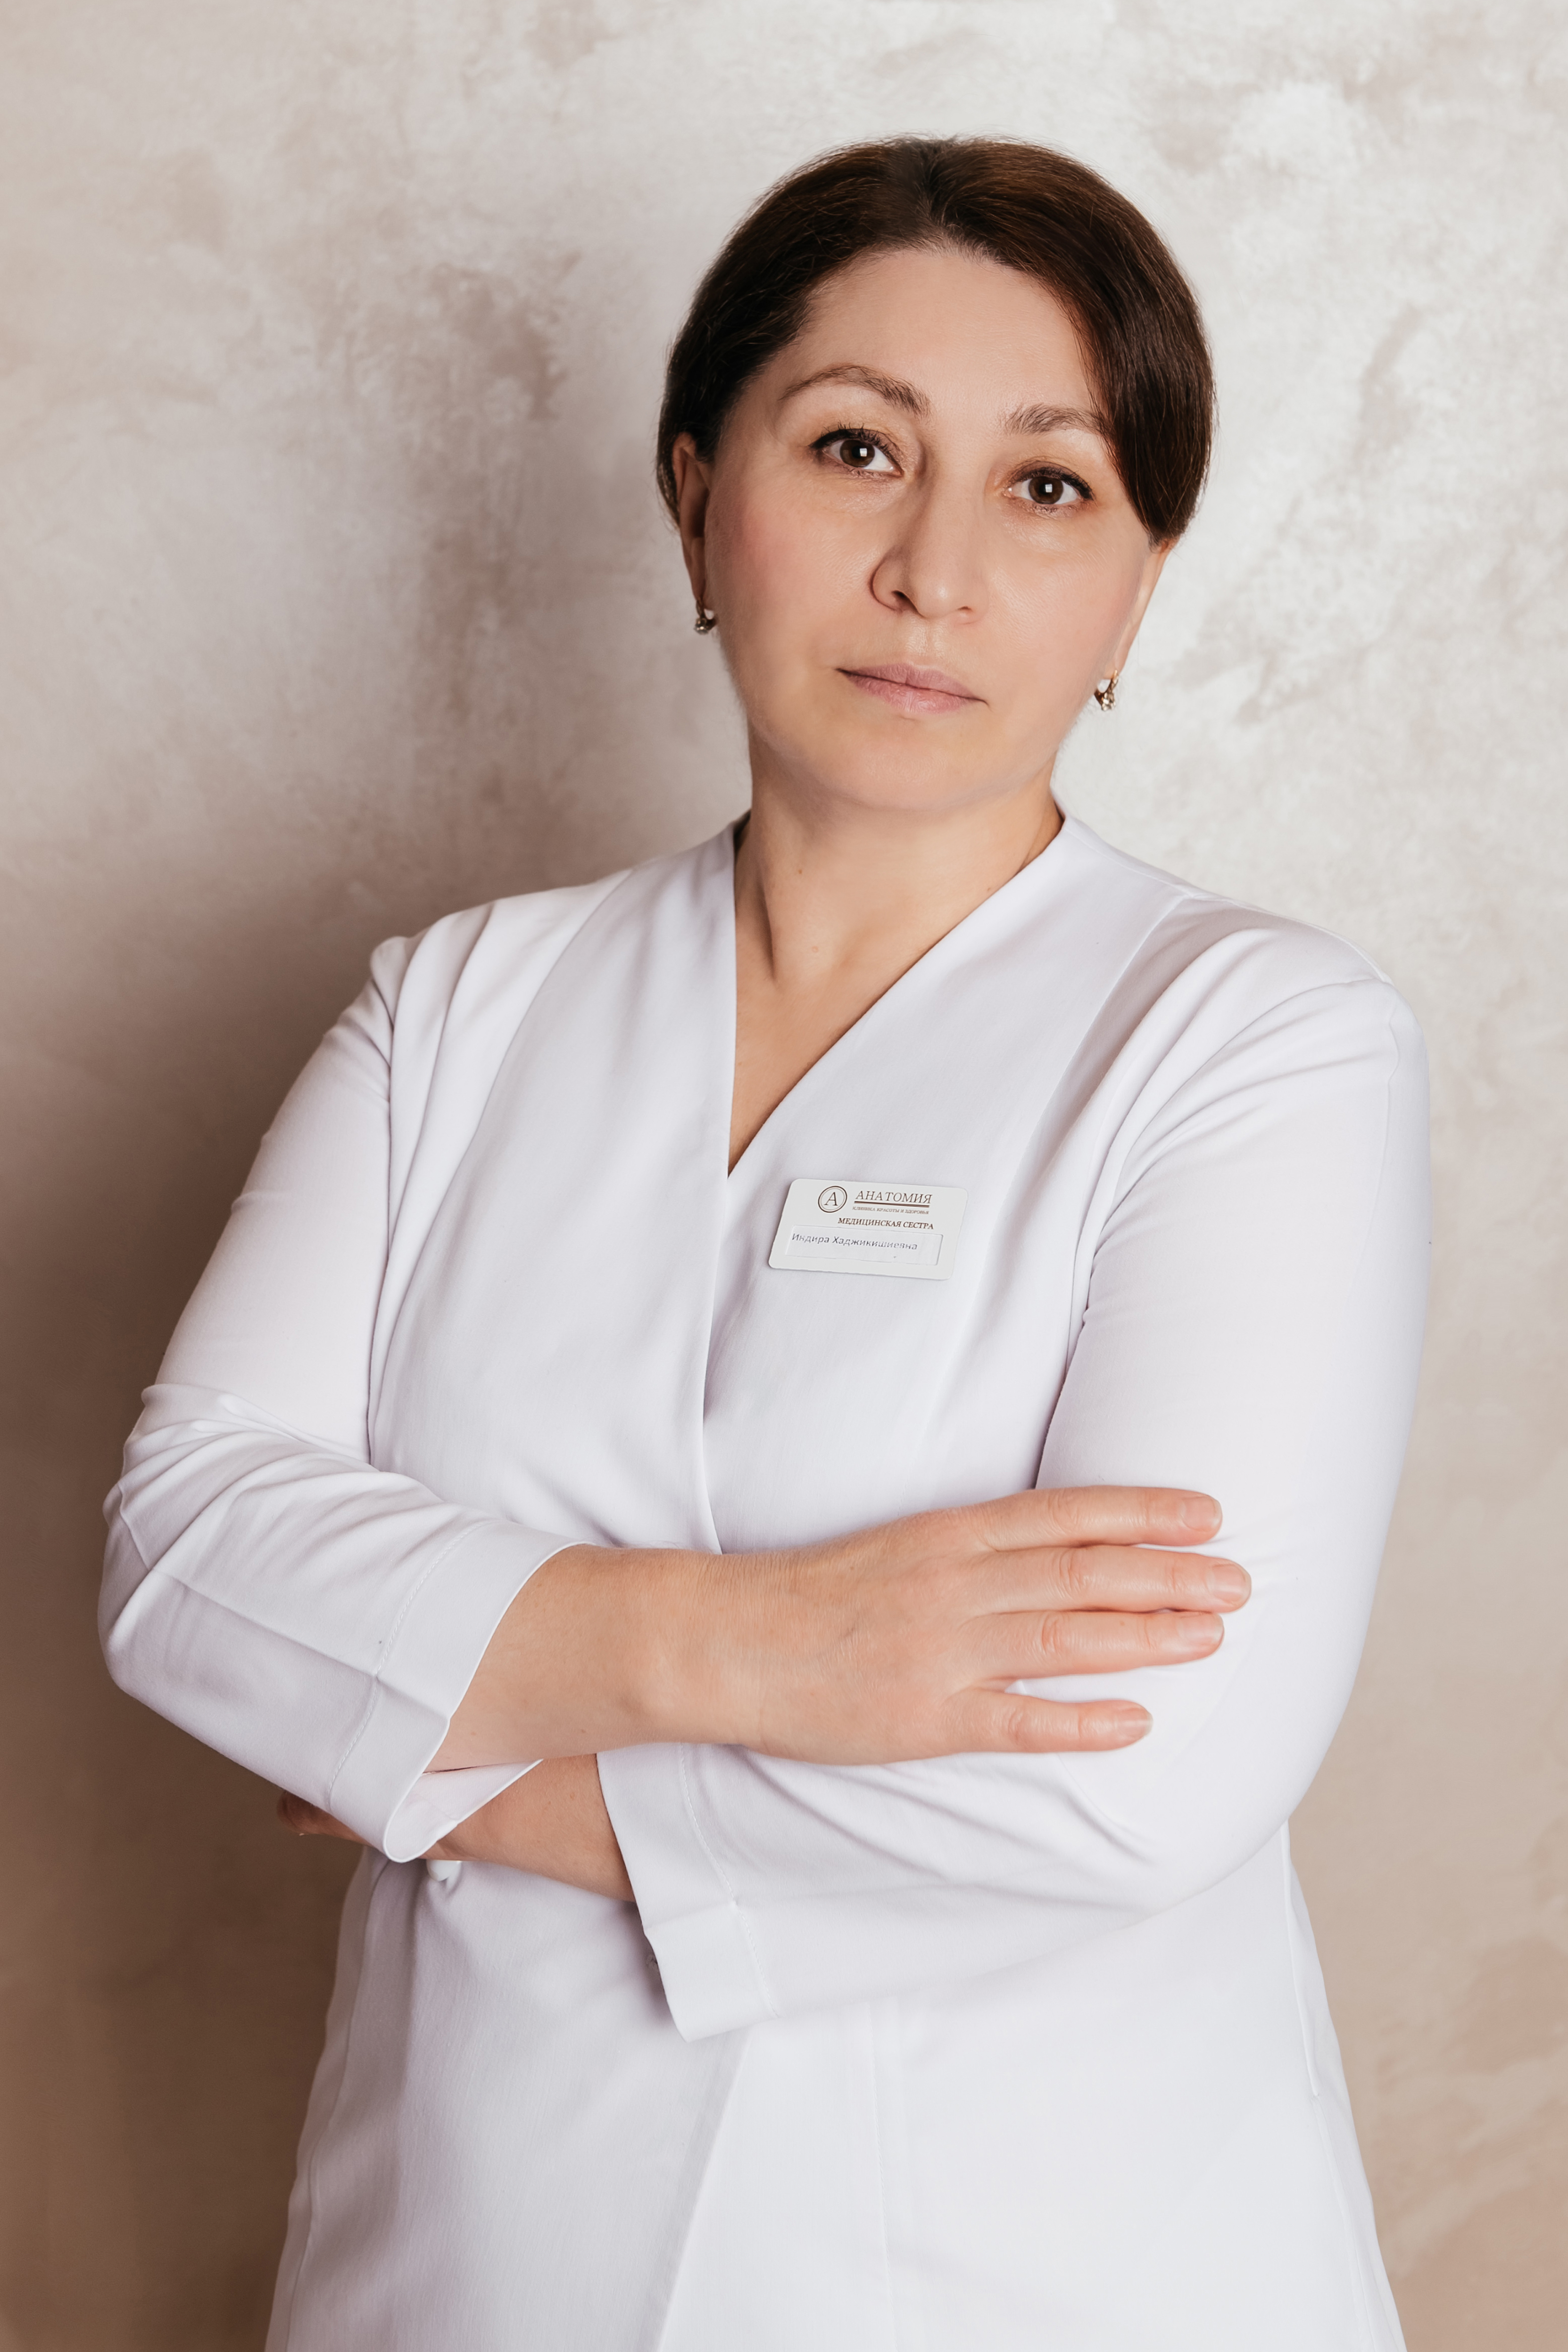 Специалист по лазерной эпиляции клиники "Анатомия" на Бауманской, Бостанова Ирина Хаджикишиевна